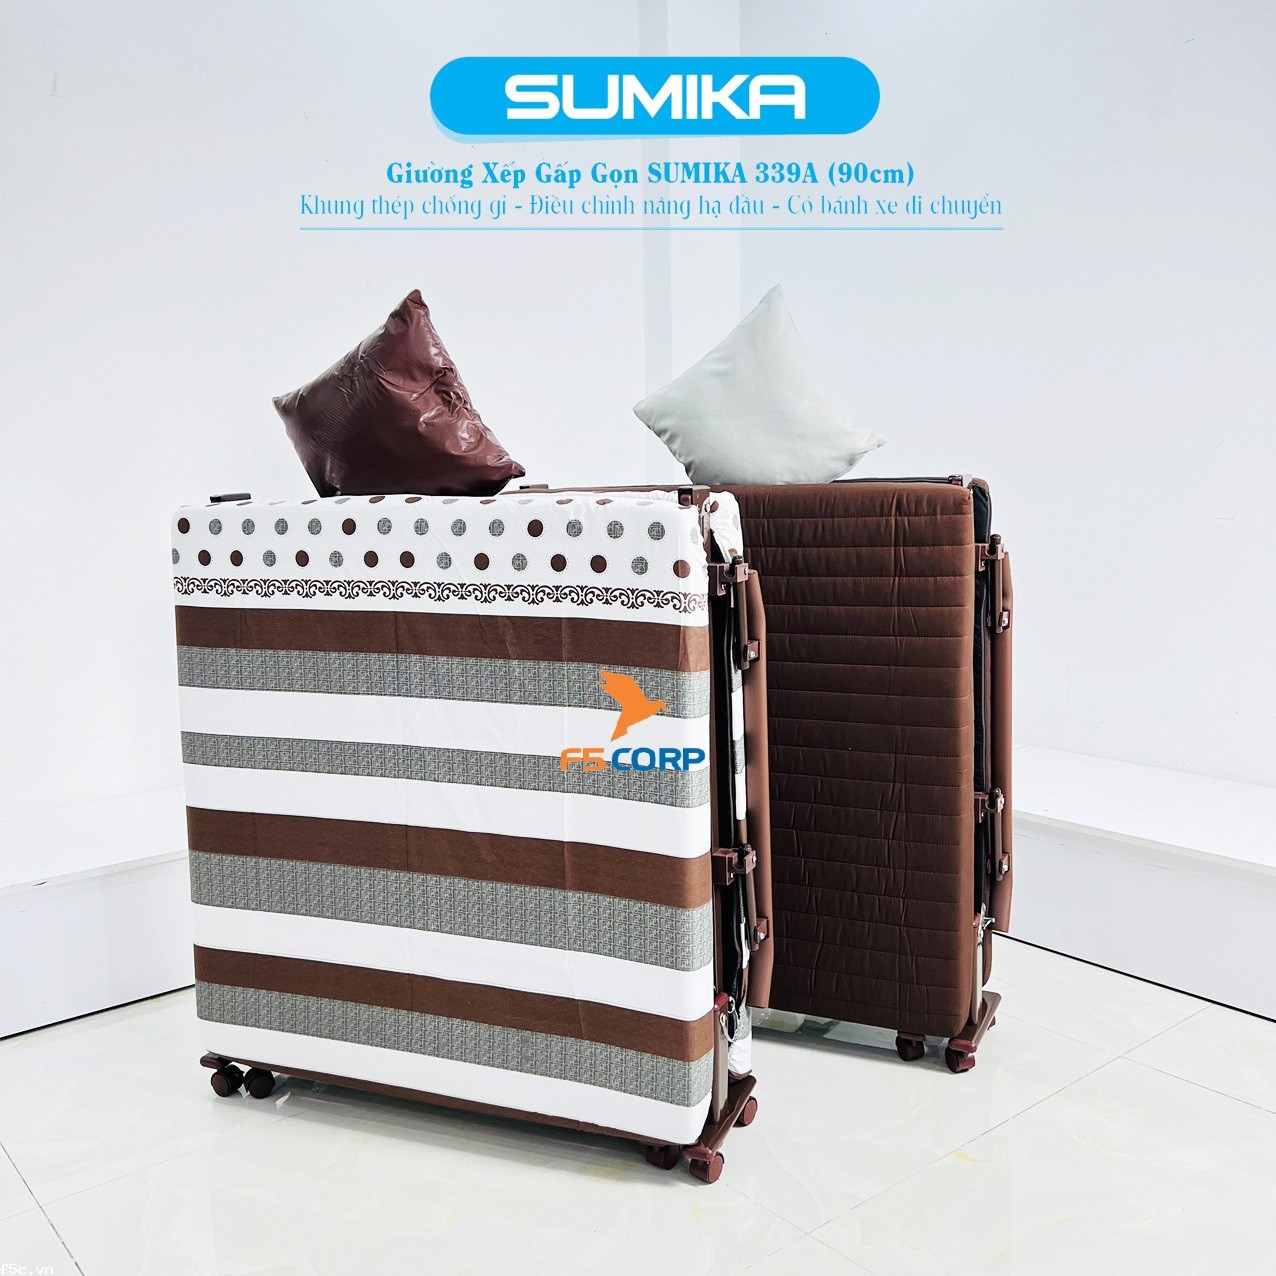 Giường nệm xếp gọn đa năng kiểu dáng Hàn Quốc SUMIKA 339A, rộng 90cm